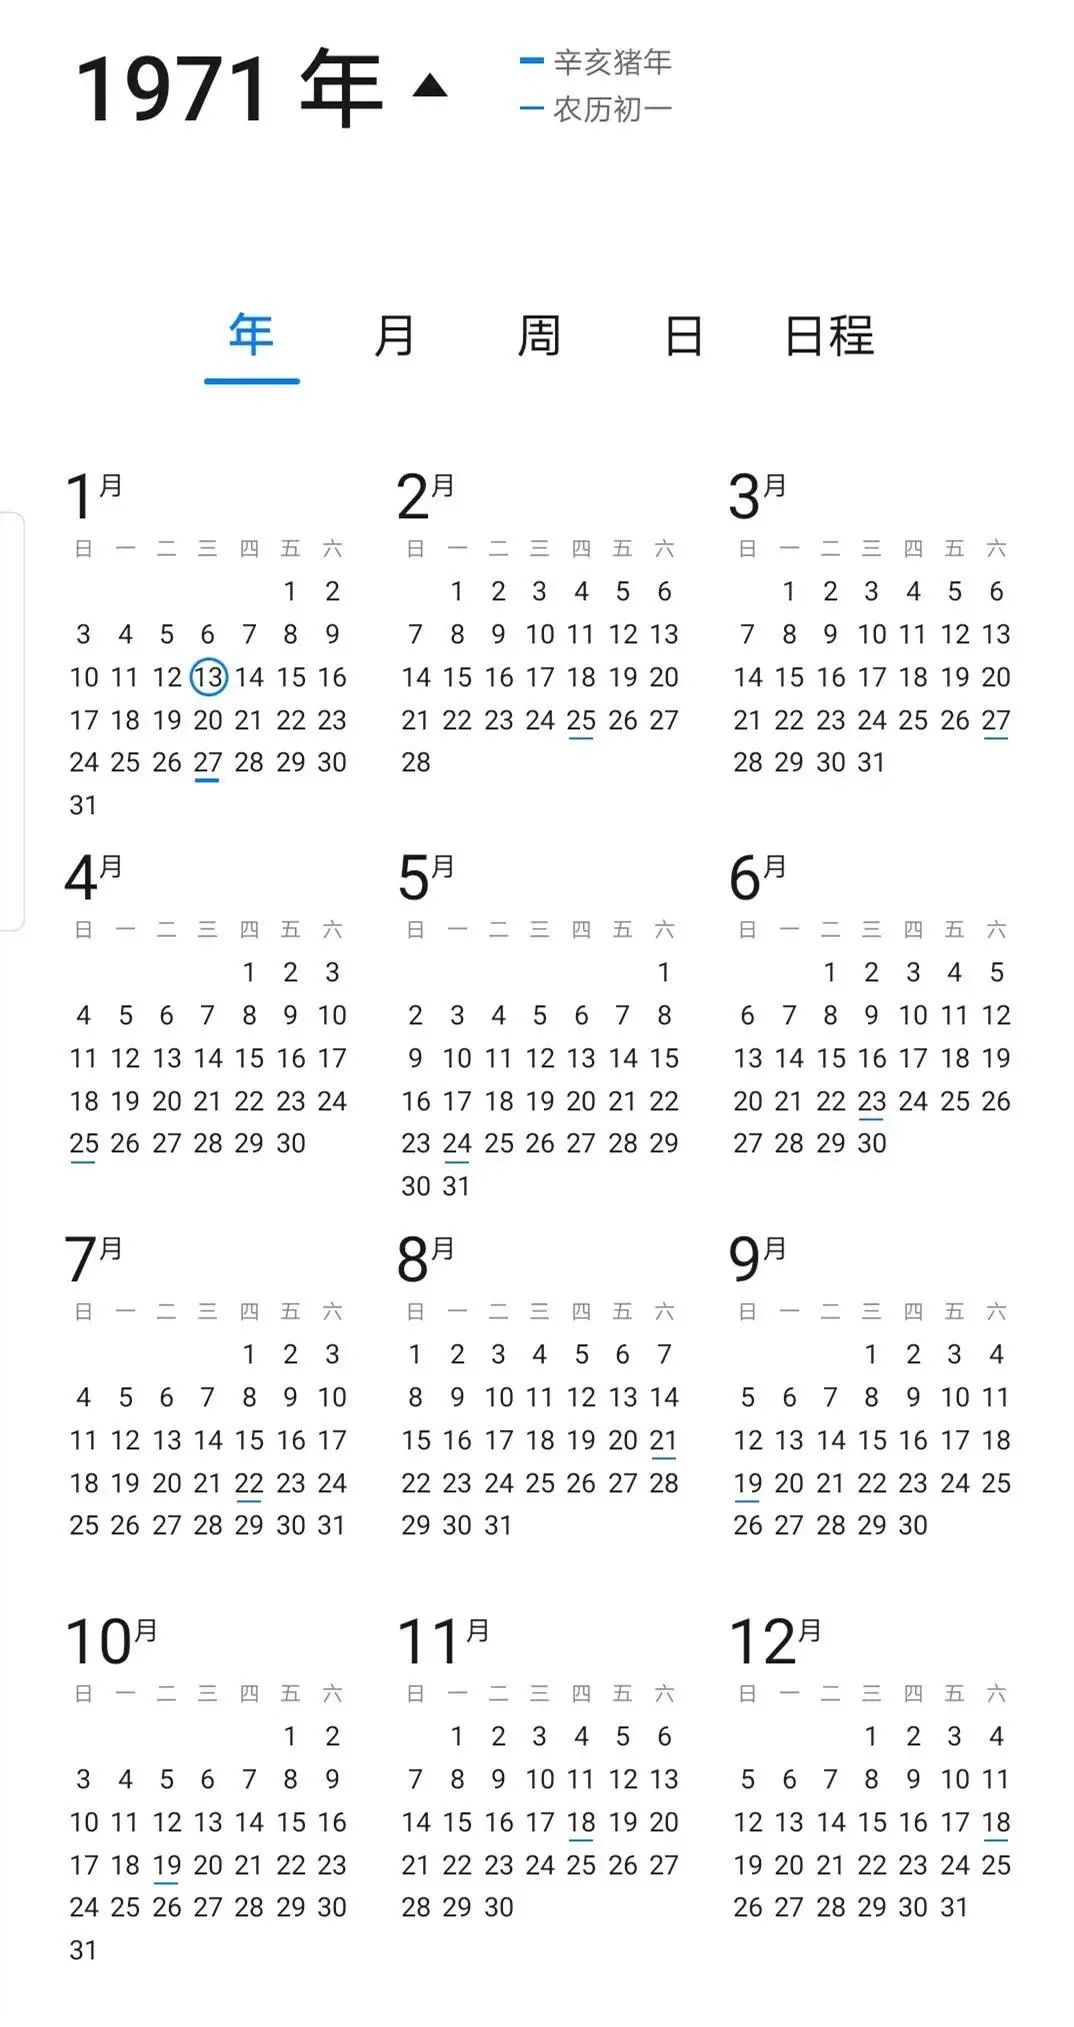 什么?2021年与1971年的日历竟然一模一样?